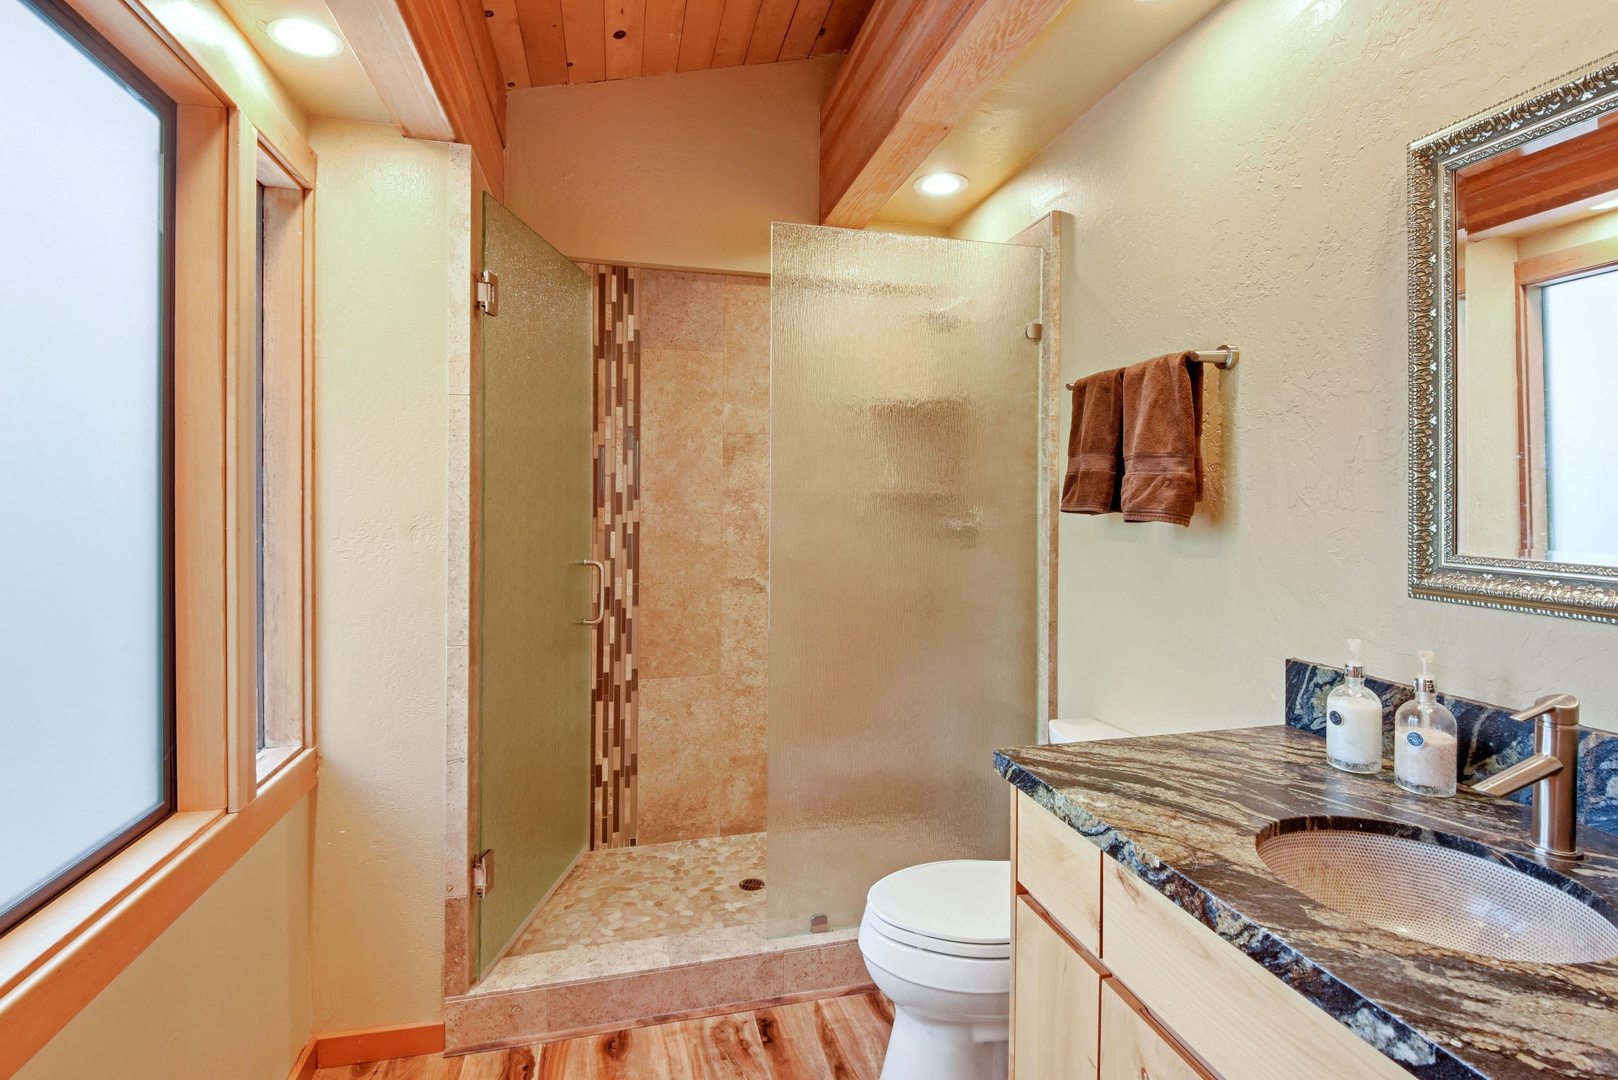 En suite master bathroom with standing shower